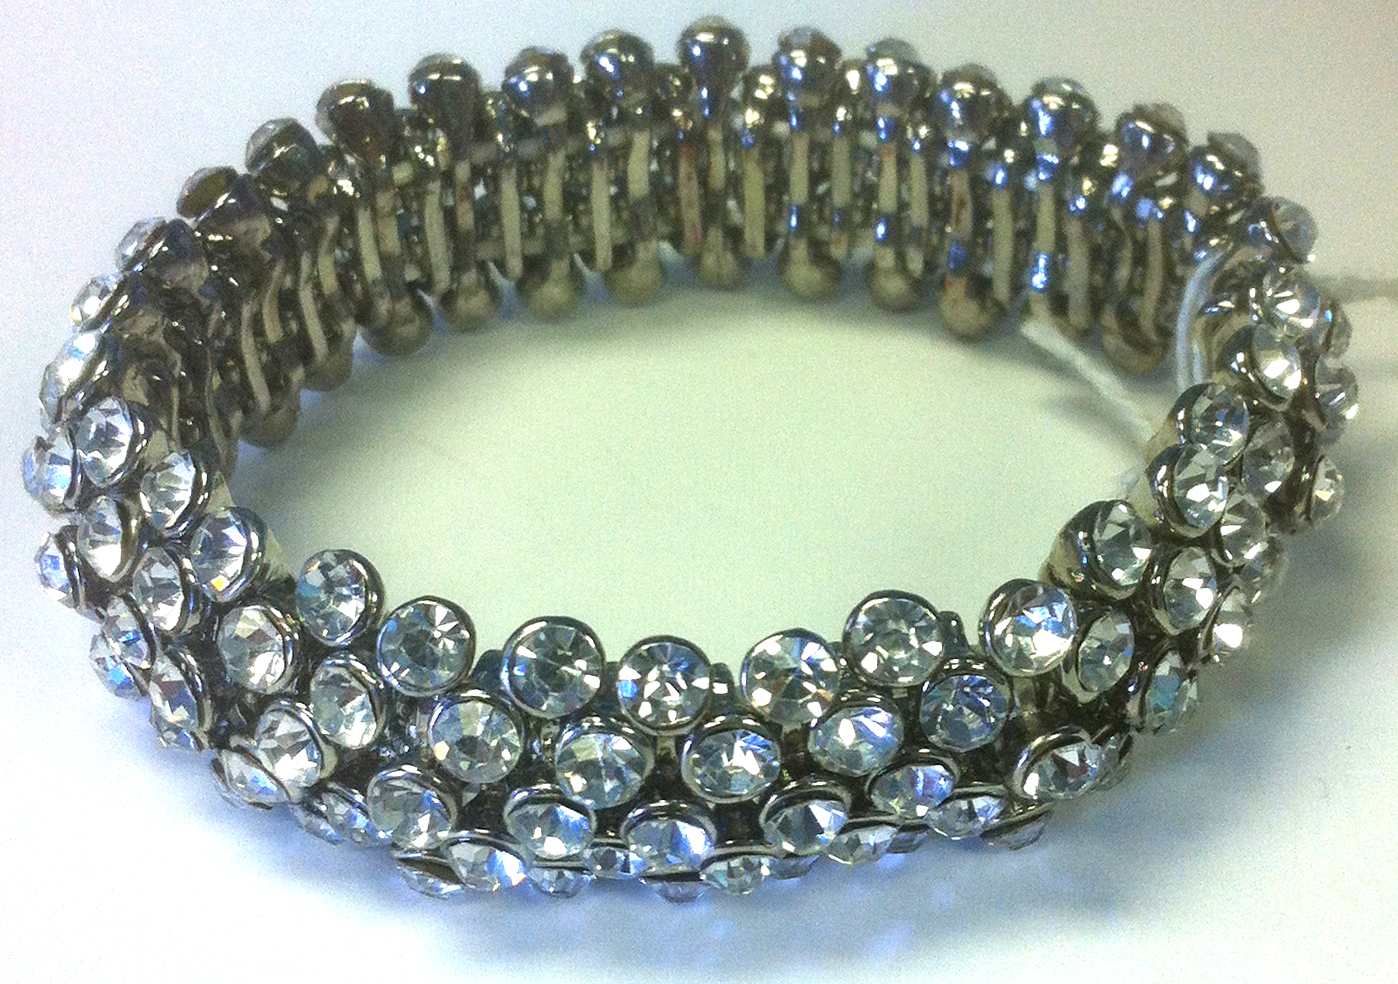 Crystal Studded Bracelet